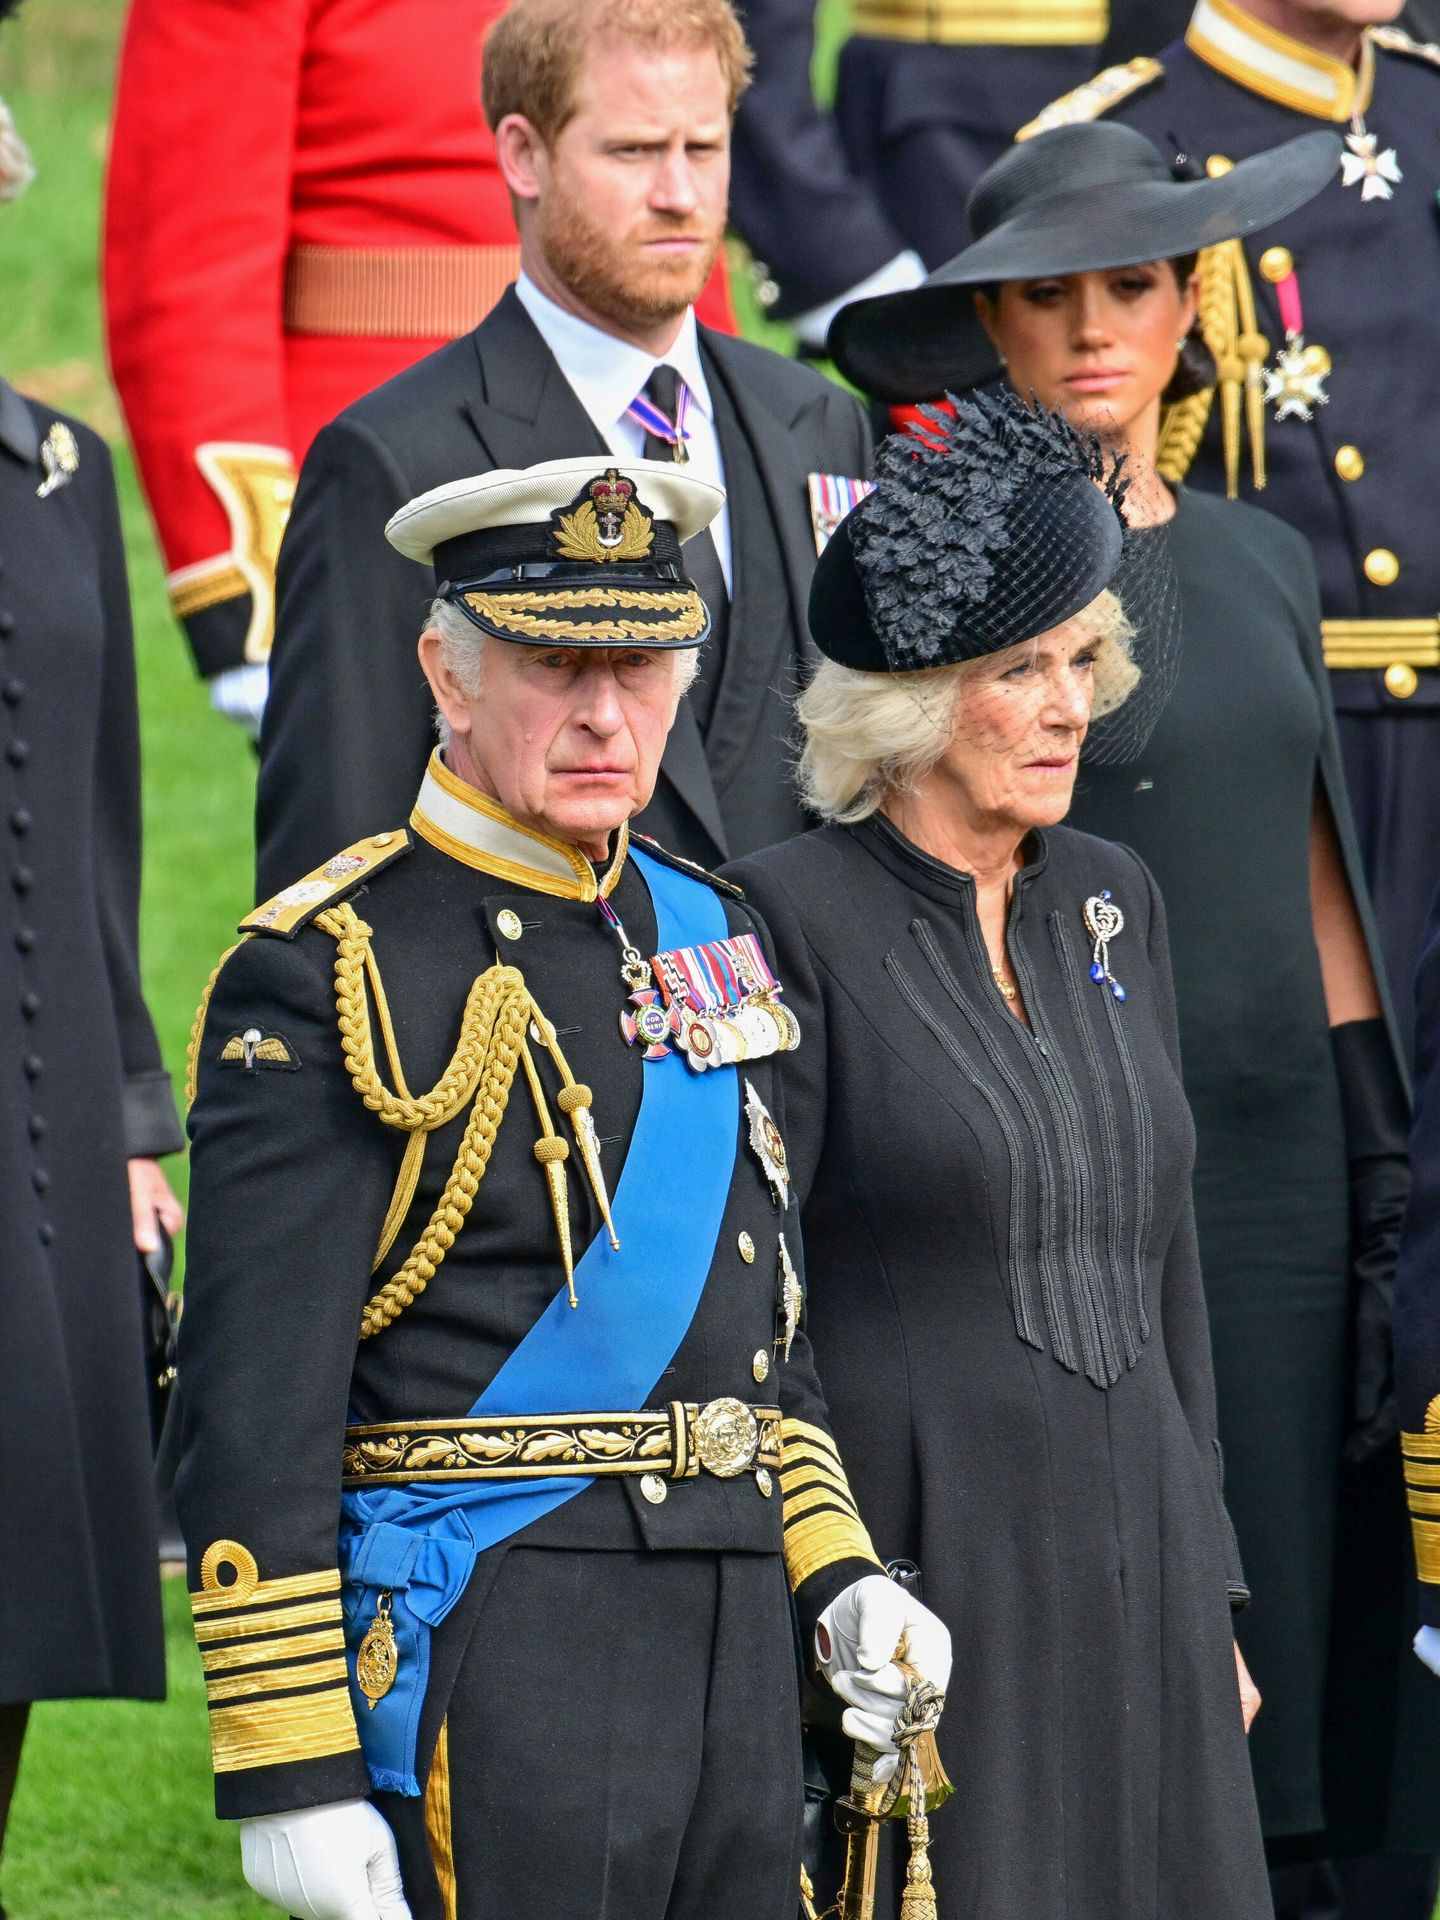 La aceptación de este premio pone al nuevo monarca en una situación complicada. (Reuters/Pool/Andy Stenning)